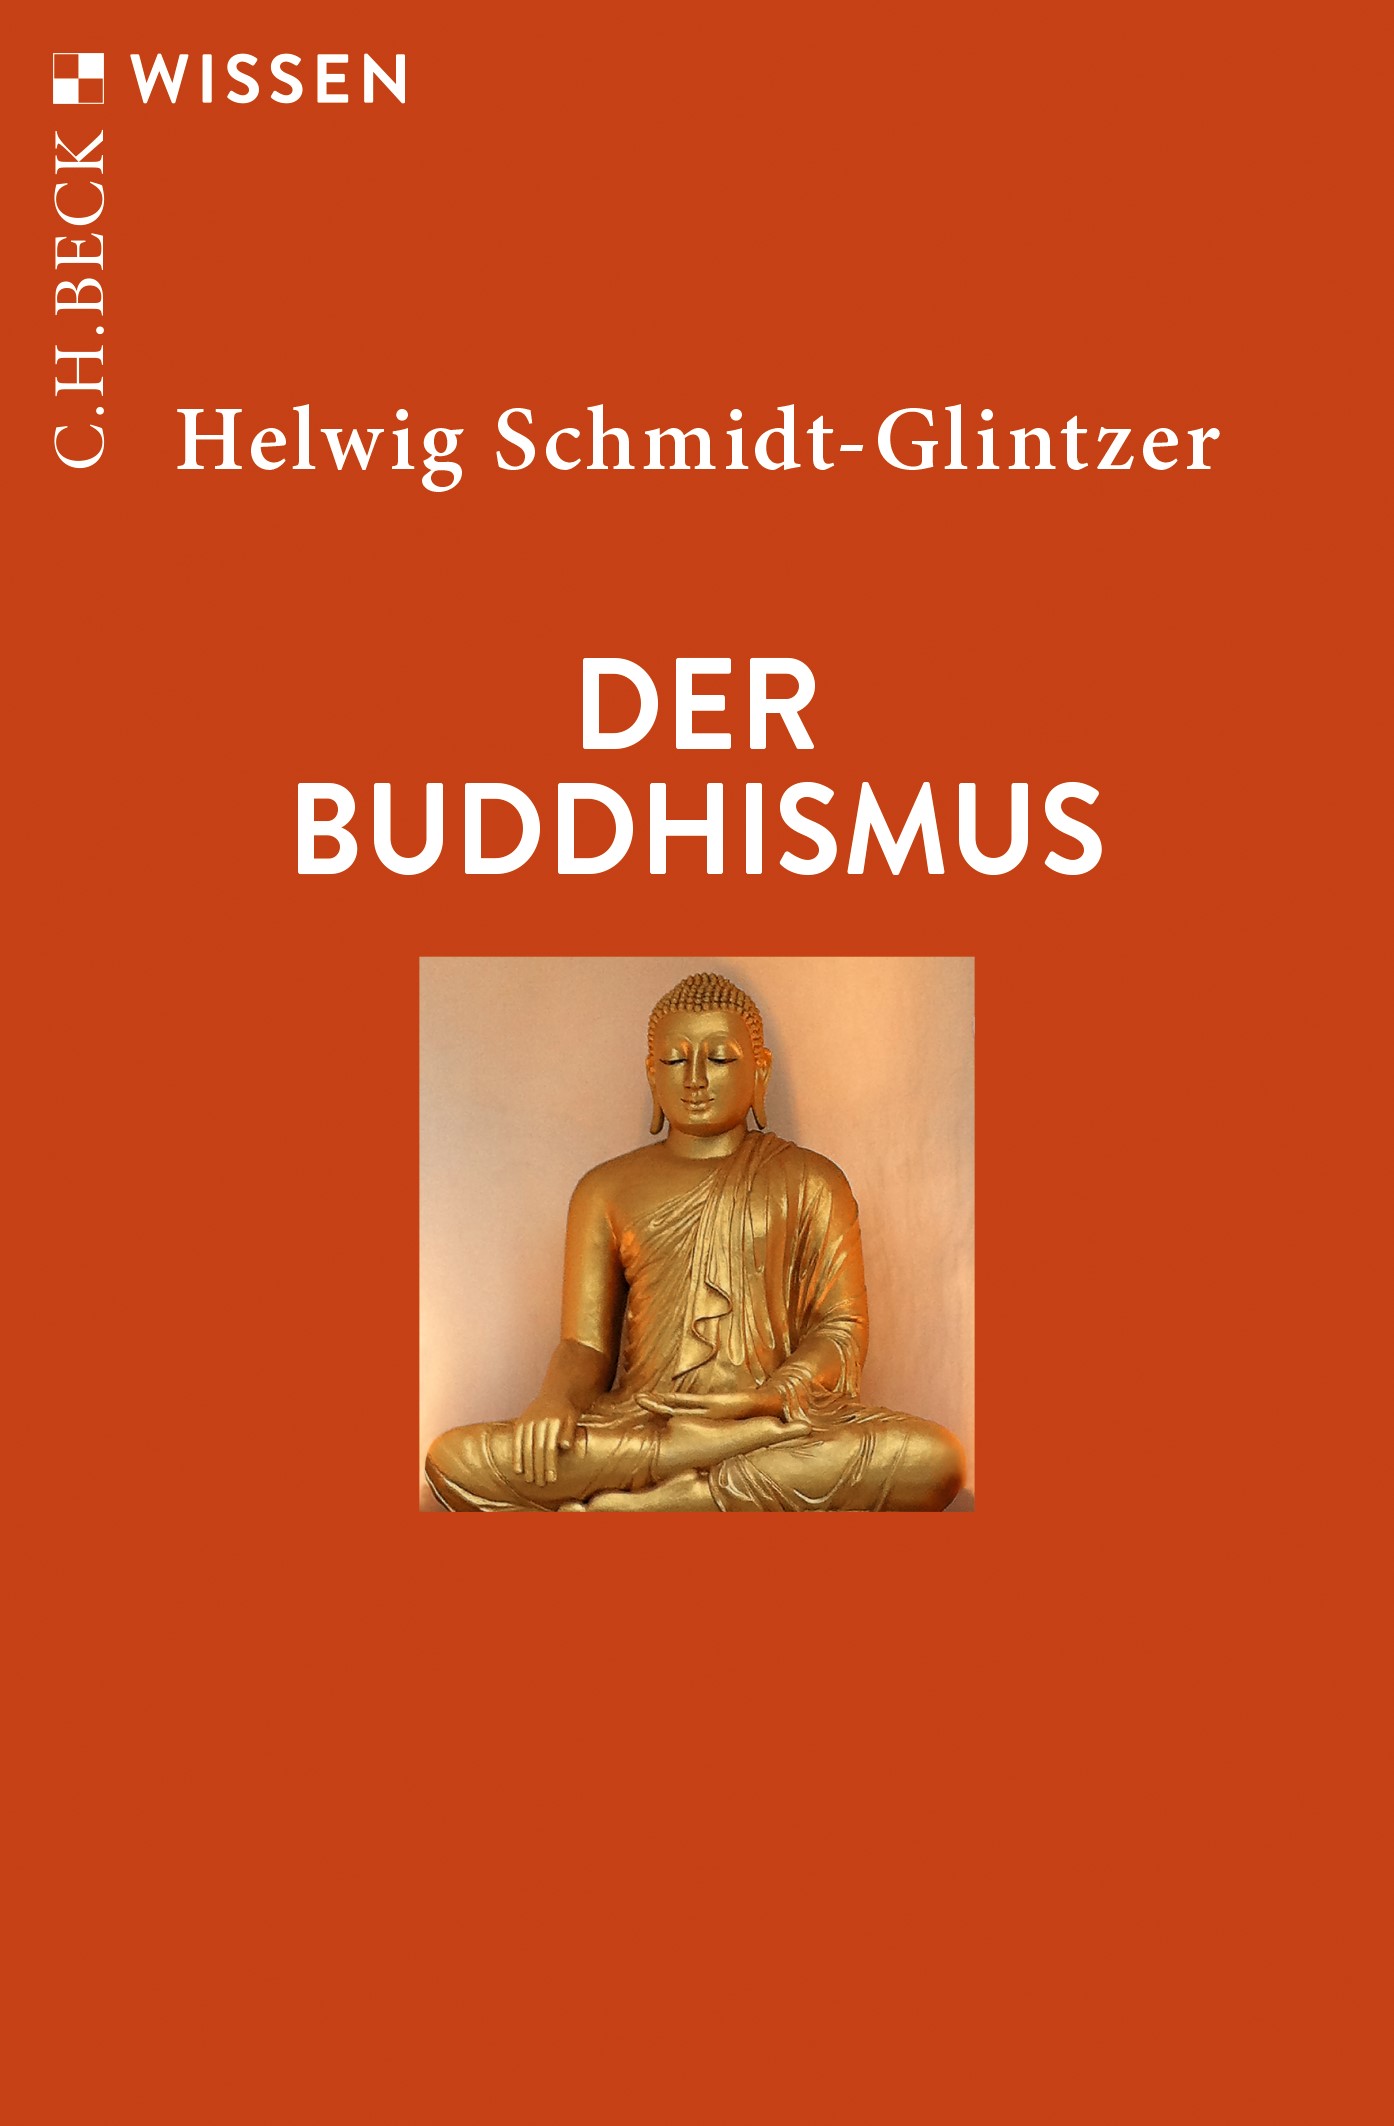 Cover: Schmidt-Glintzer, Helwig, Der Buddhismus